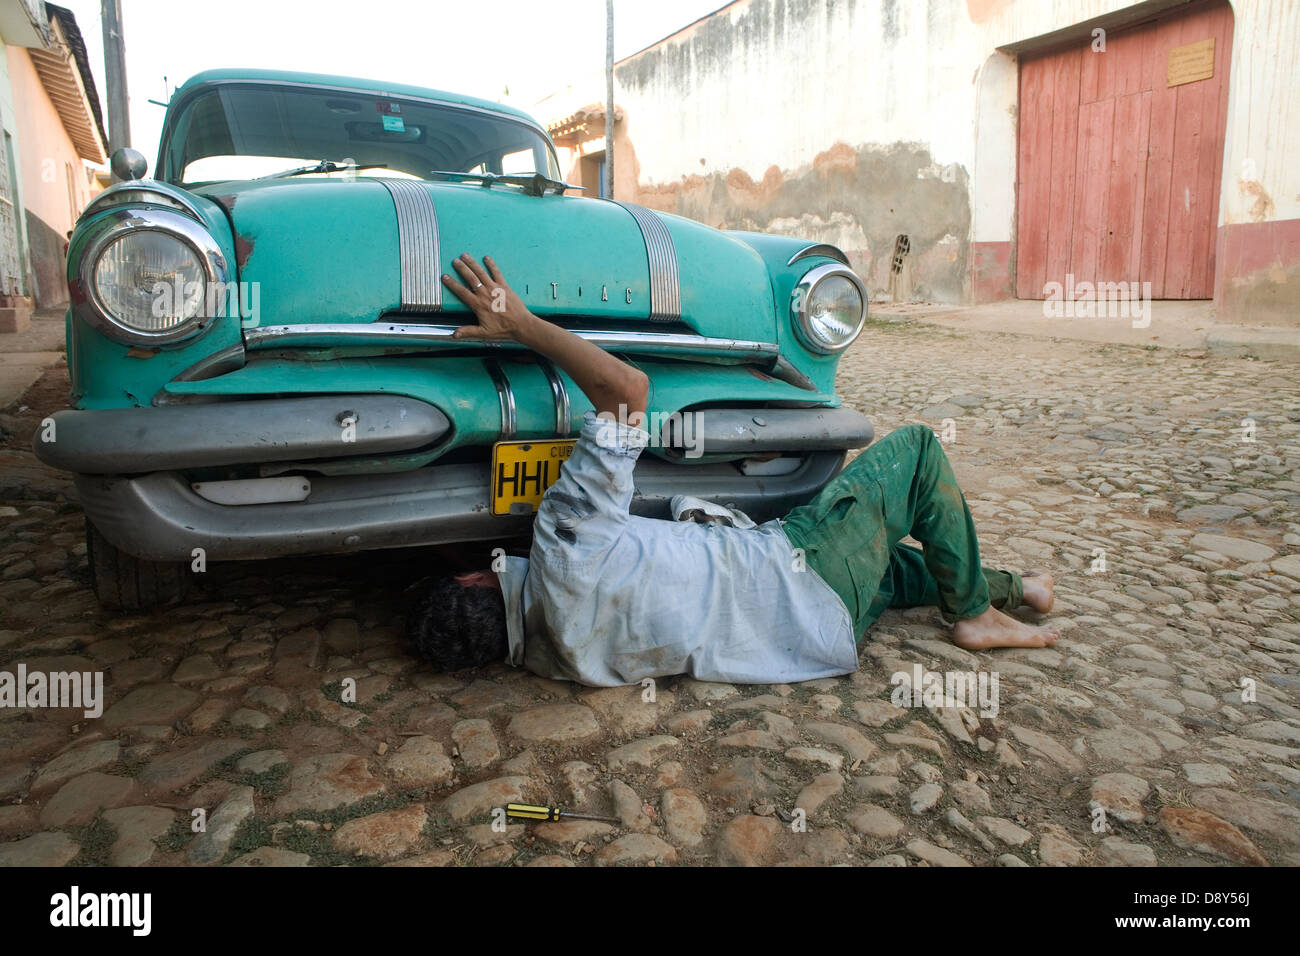 Un patrimonio speciale a Cuba sono vetture americane dagli anni cinquanta. Solo il corpo esterno è originale. Tutto il resto è stato cambiato. Foto Stock